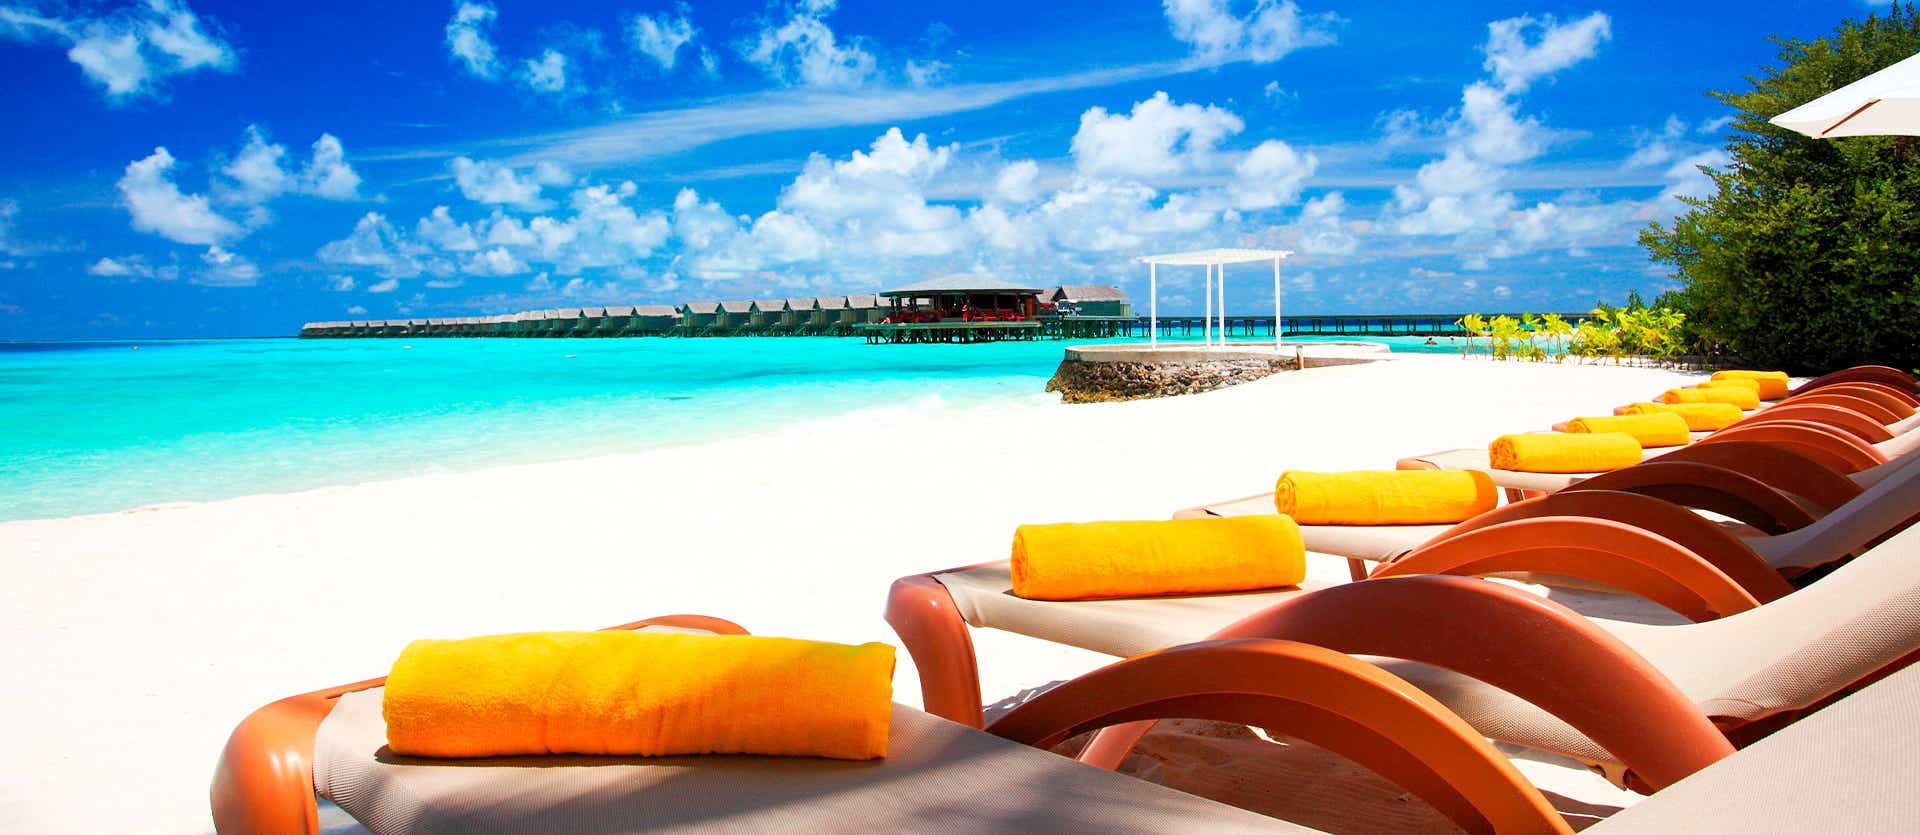 Centara Ras Fushi Resort & Spa <span class="iconos separador"></span> Maldives